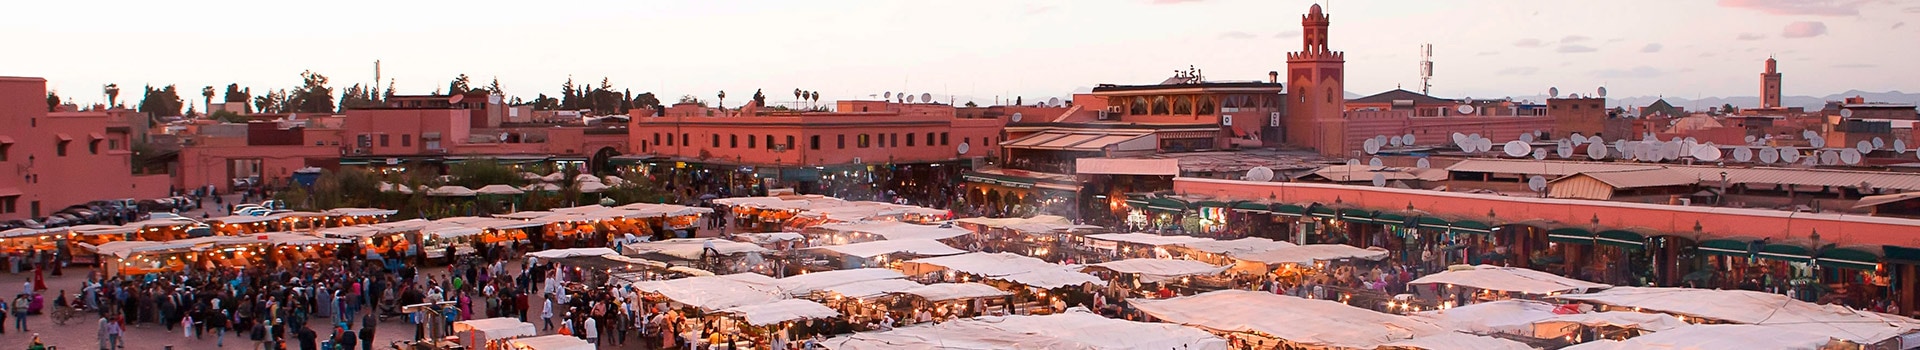 La Rochelle - Marrakech